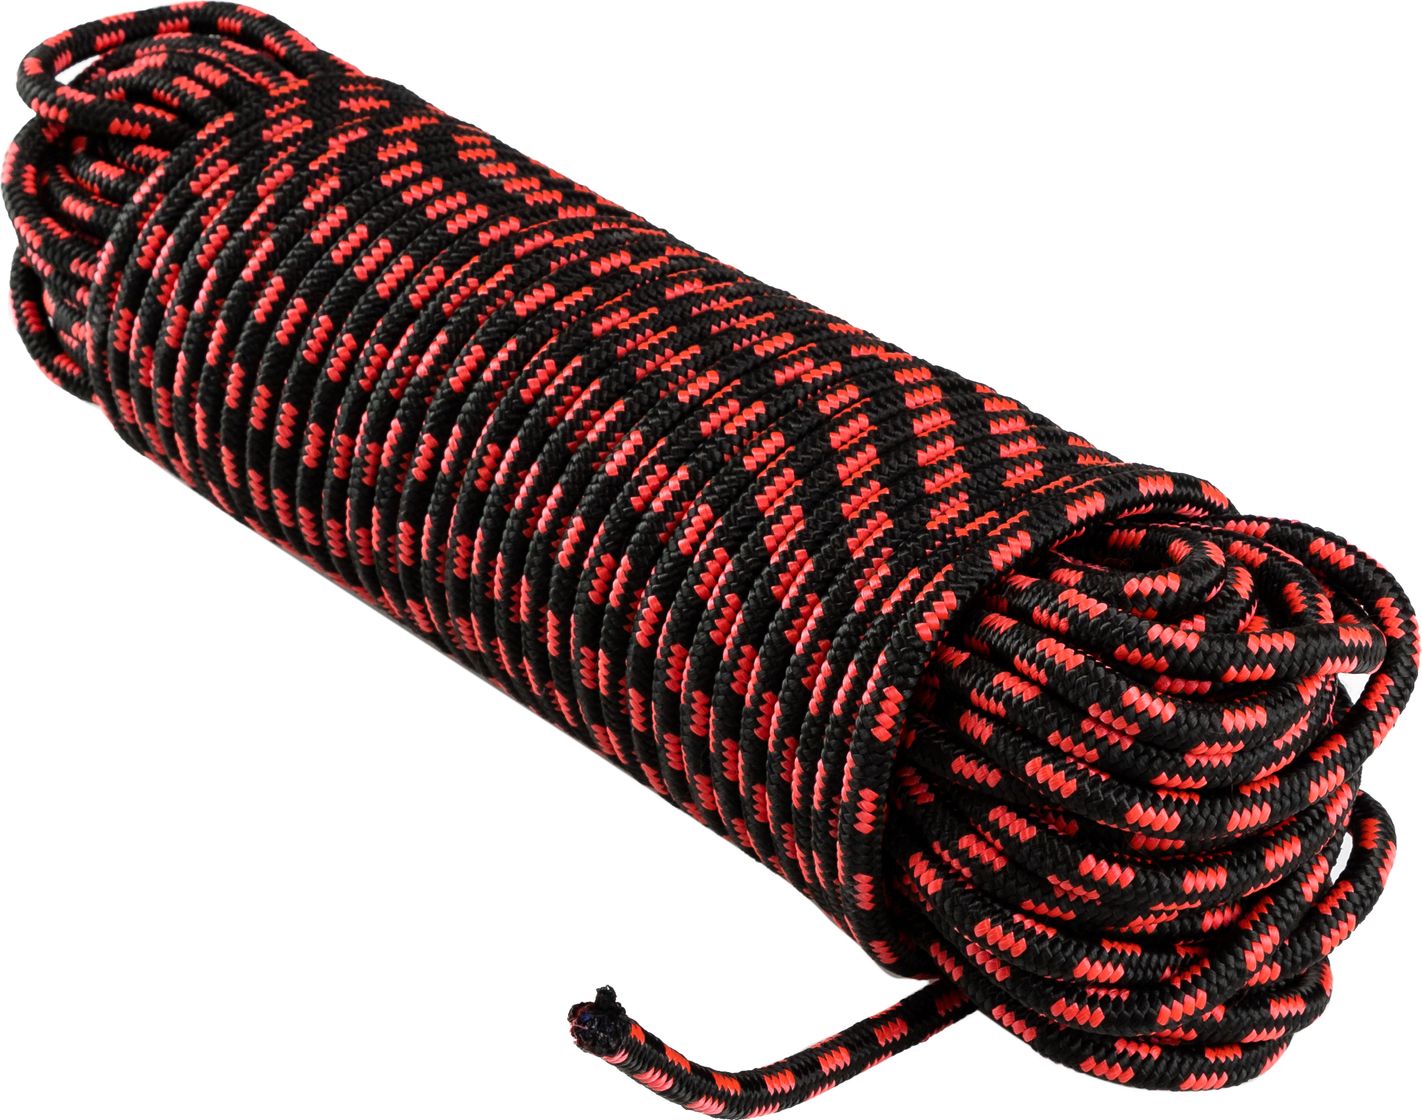 Шнур полипропиленовый плетеный d 10 мм, L 50 м SHND10L50 полипропиленовый крученый шнур каменщика стройбат